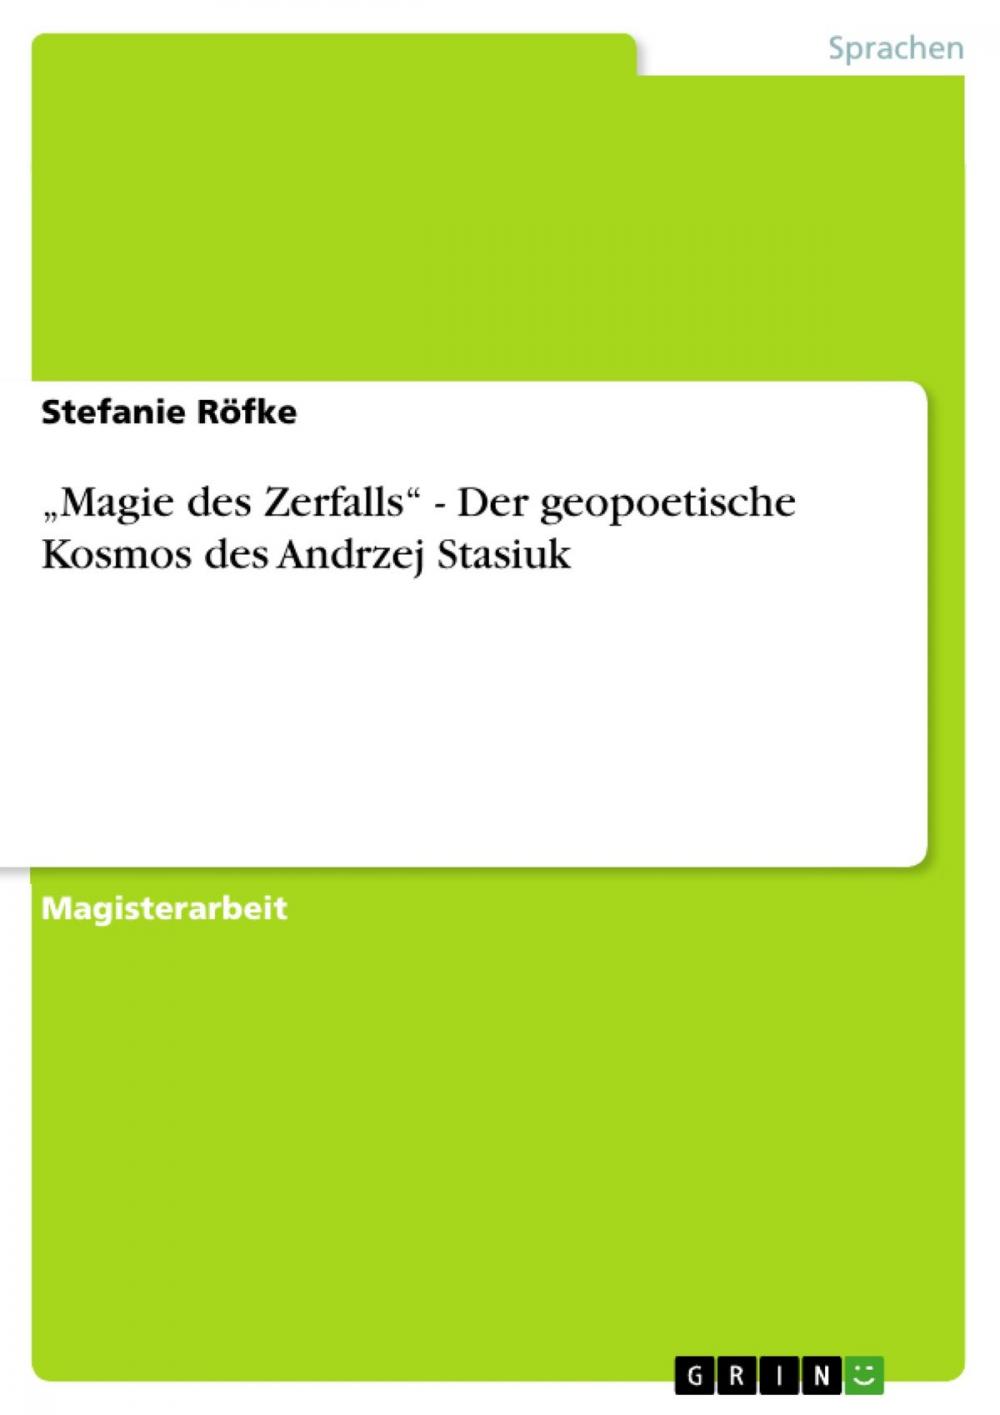 Big bigCover of 'Magie des Zerfalls' - Der geopoetische Kosmos des Andrzej Stasiuk